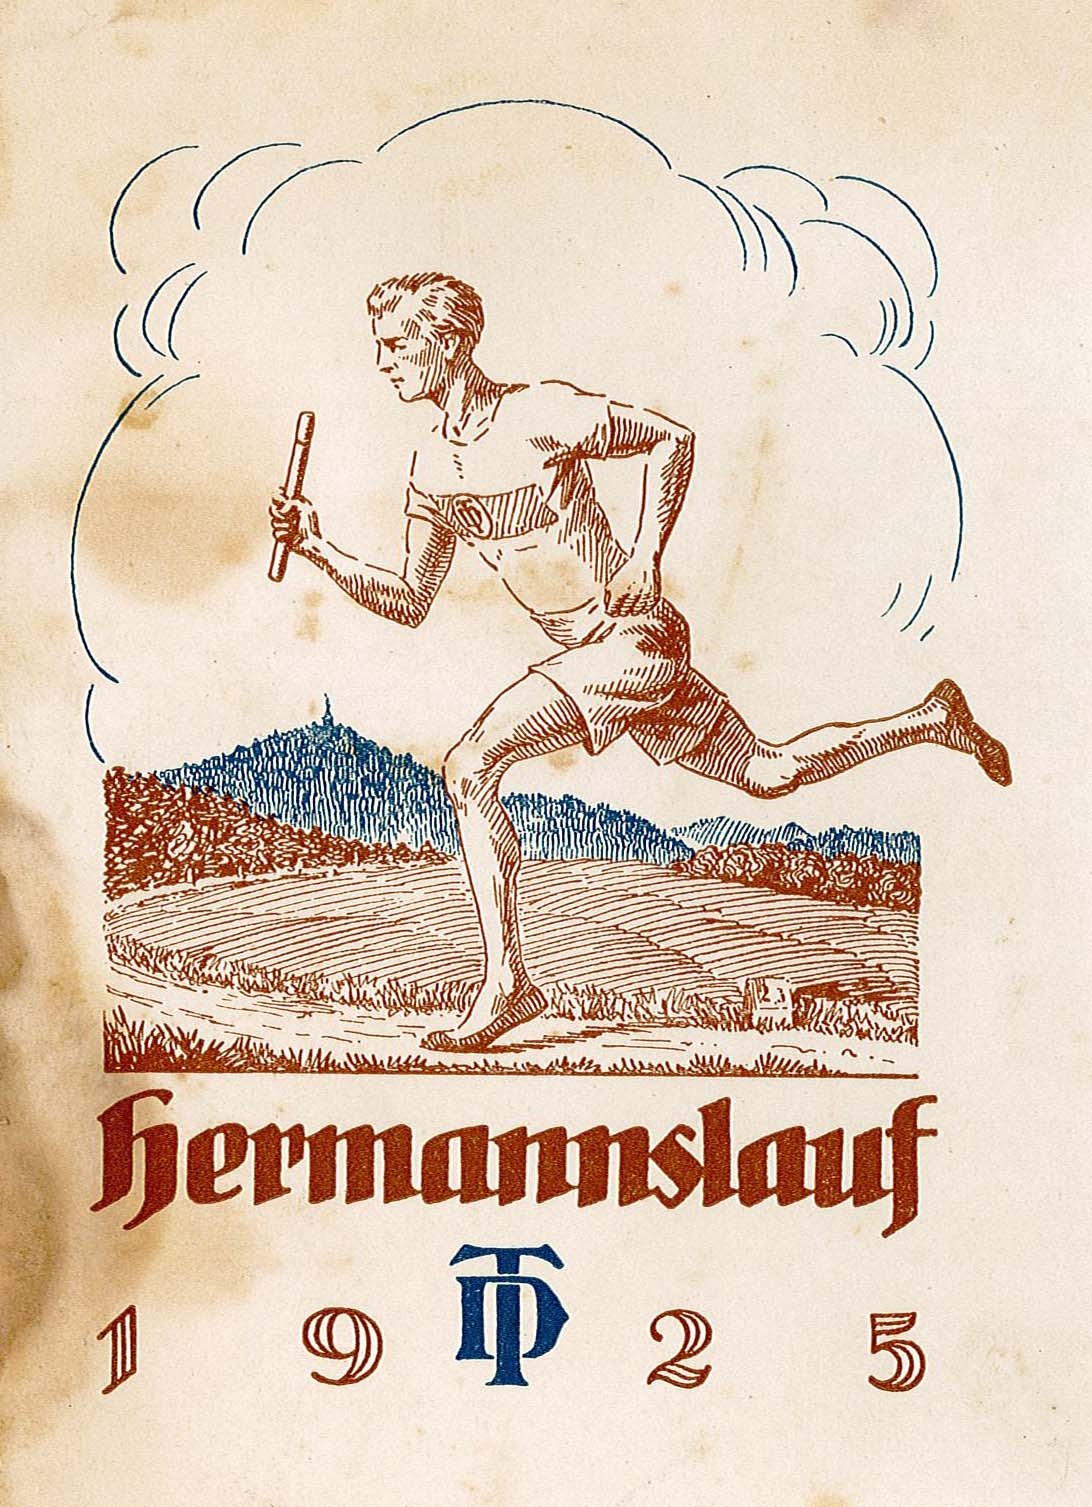 Urkunde zur Teilnahme am Hermannslauf 1925 für Alfred Hanne (Museum Wolmirstedt RR-F)